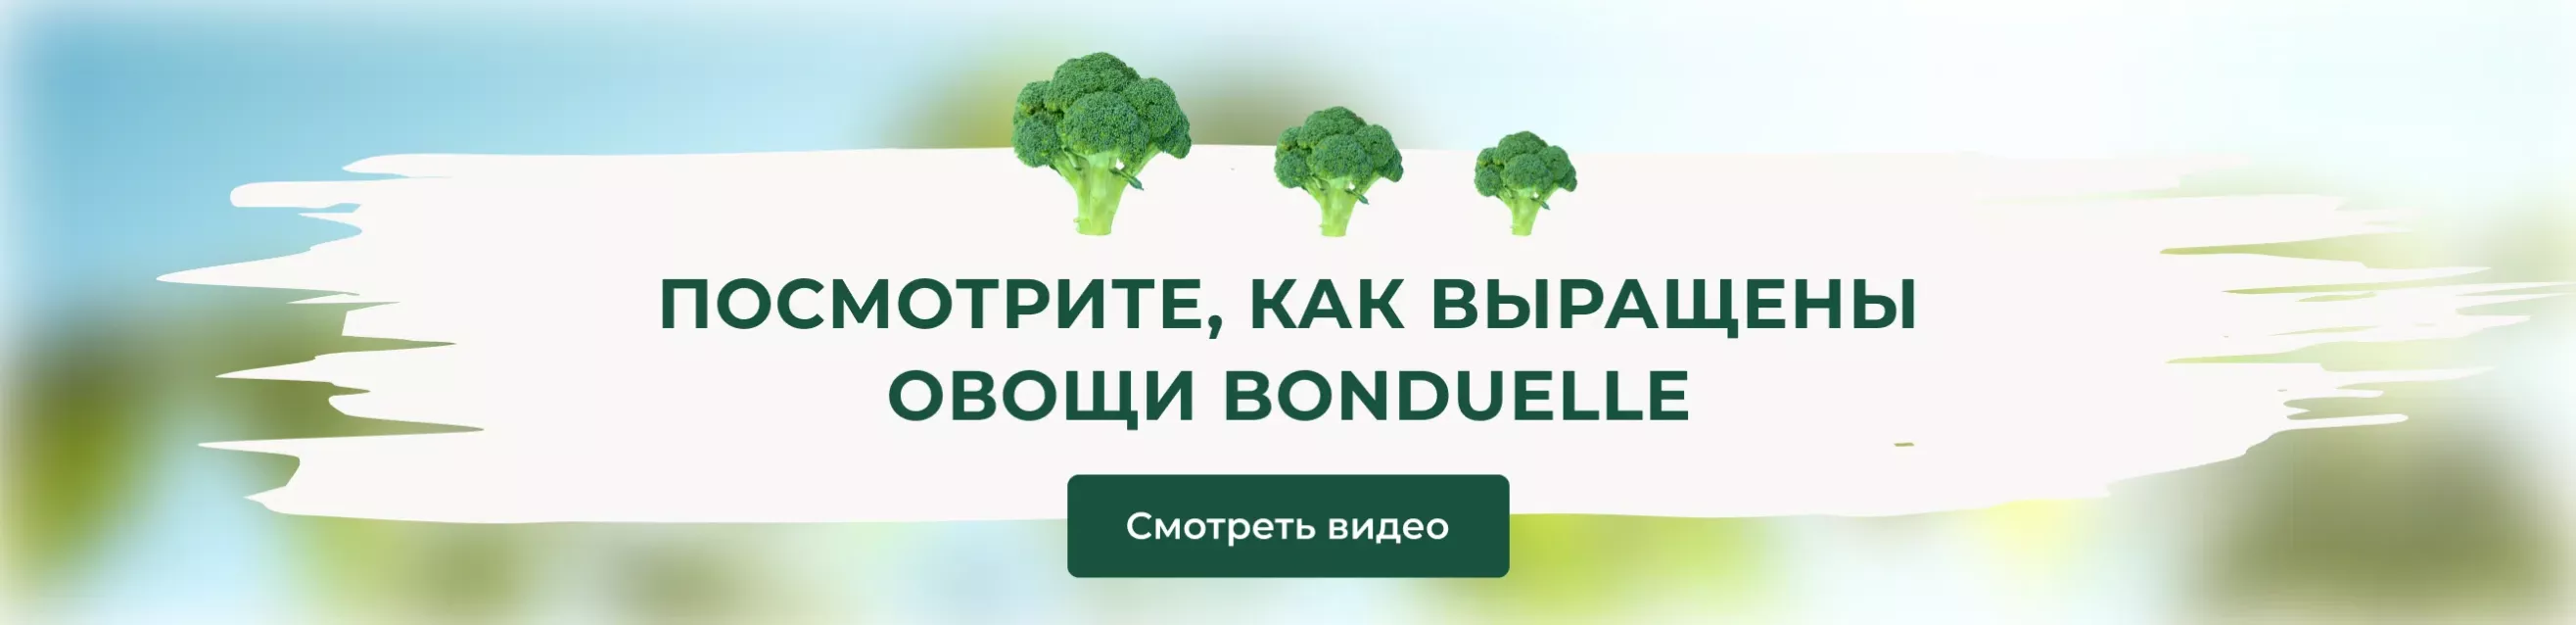 Посмотрите, как выращены овощи Bonduelle